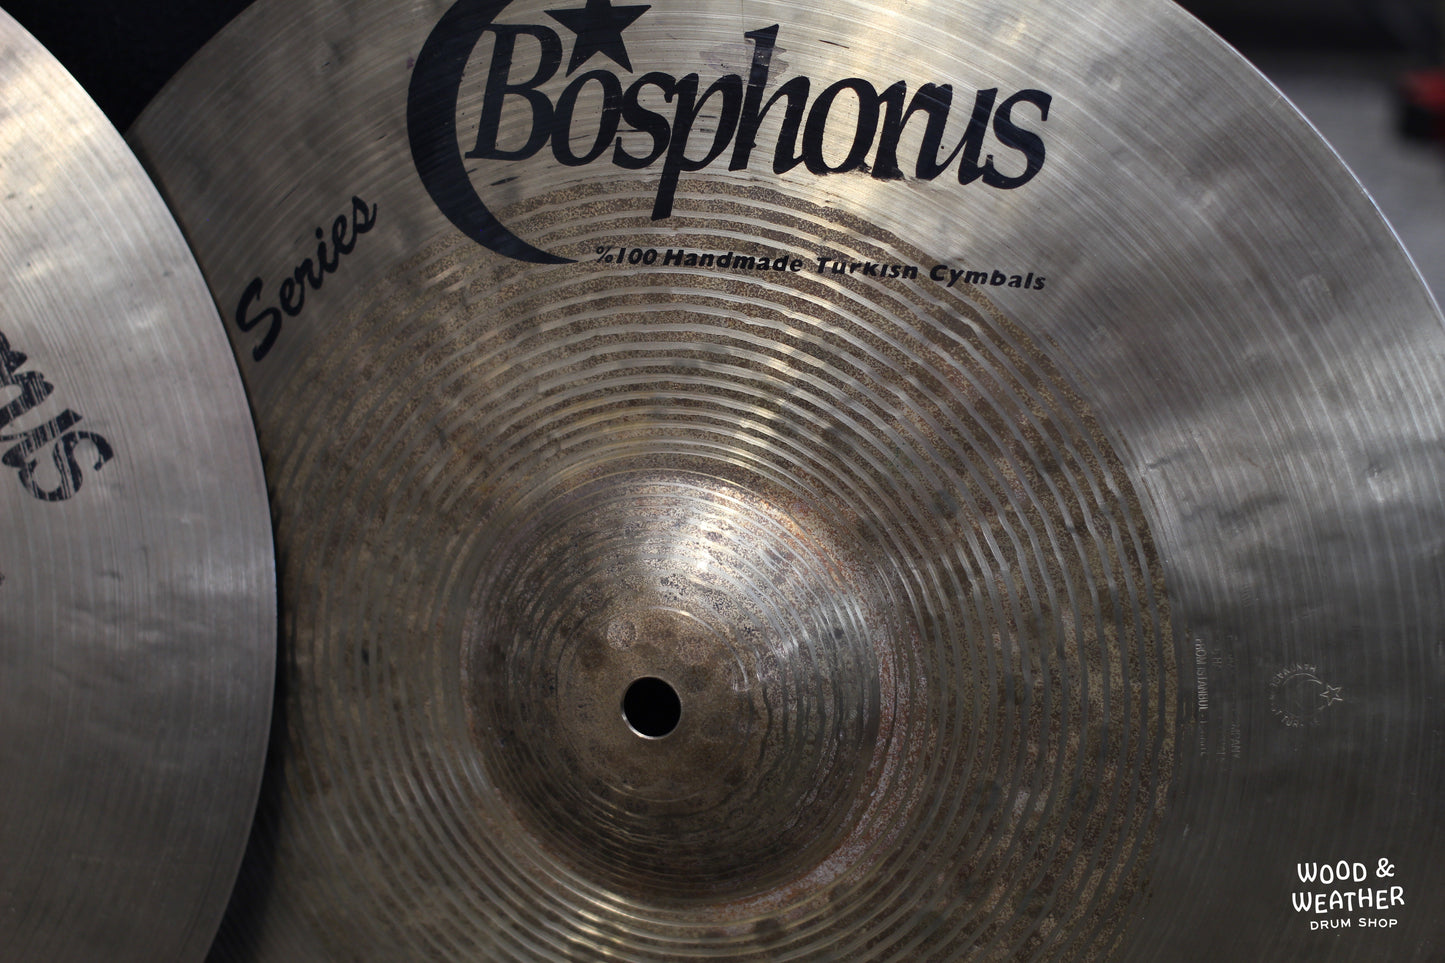 Used Bosphorus 14" Masters Series Hi-Hat Cymbals 886/1080g